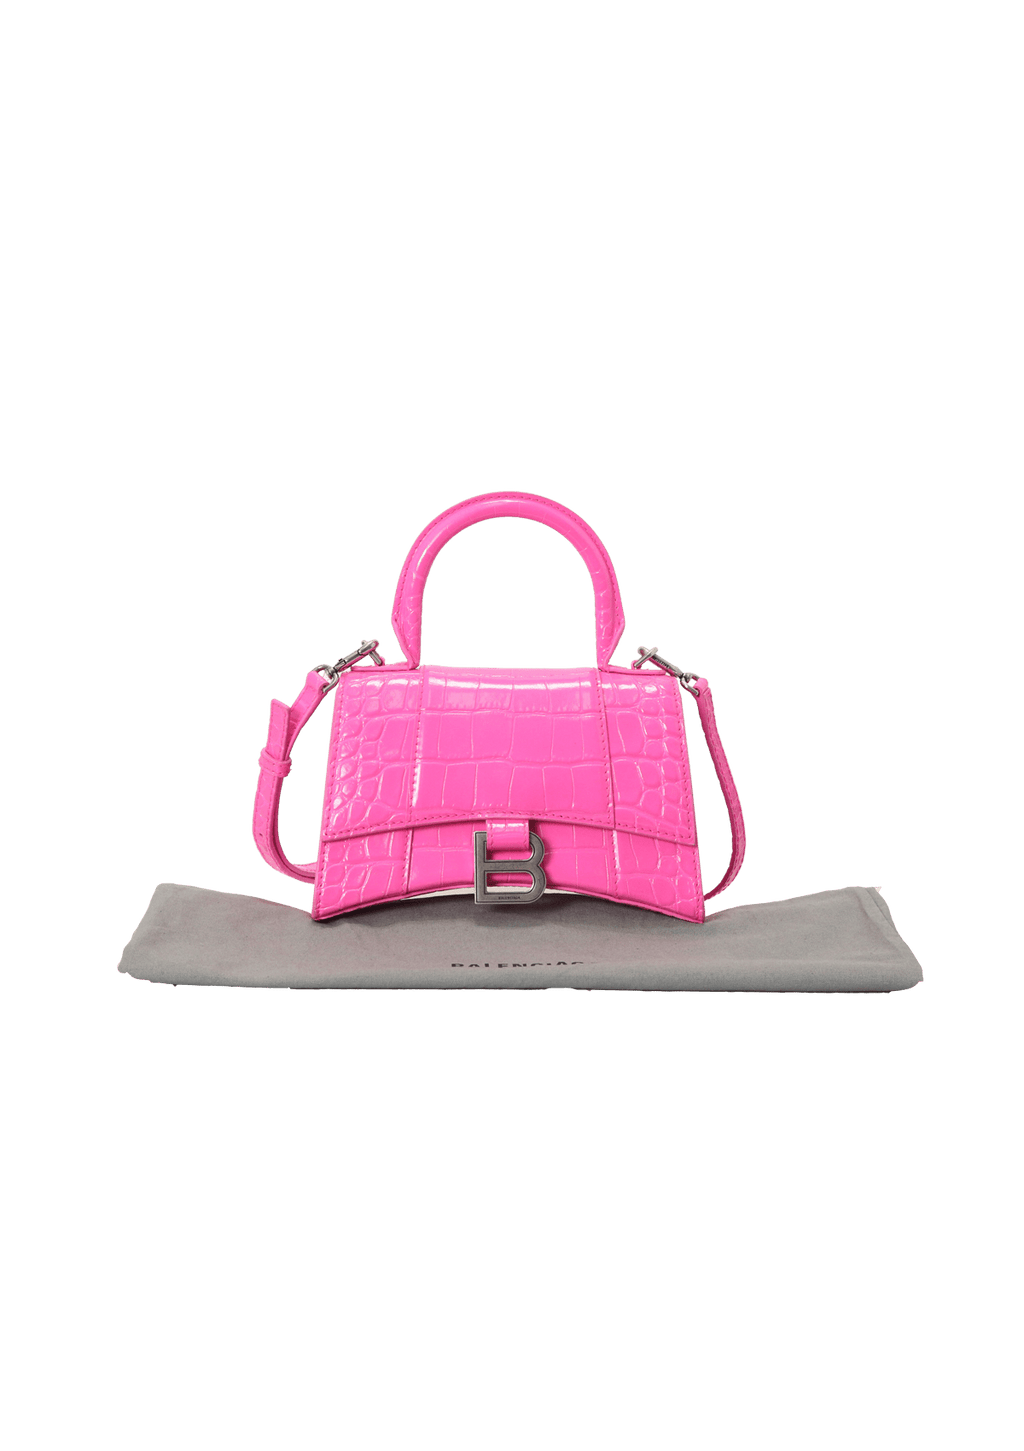 Buy Balenciaga XS Hourglass Top Handle Bag 'Neon Pink' - 592833 2UD6Y 5608